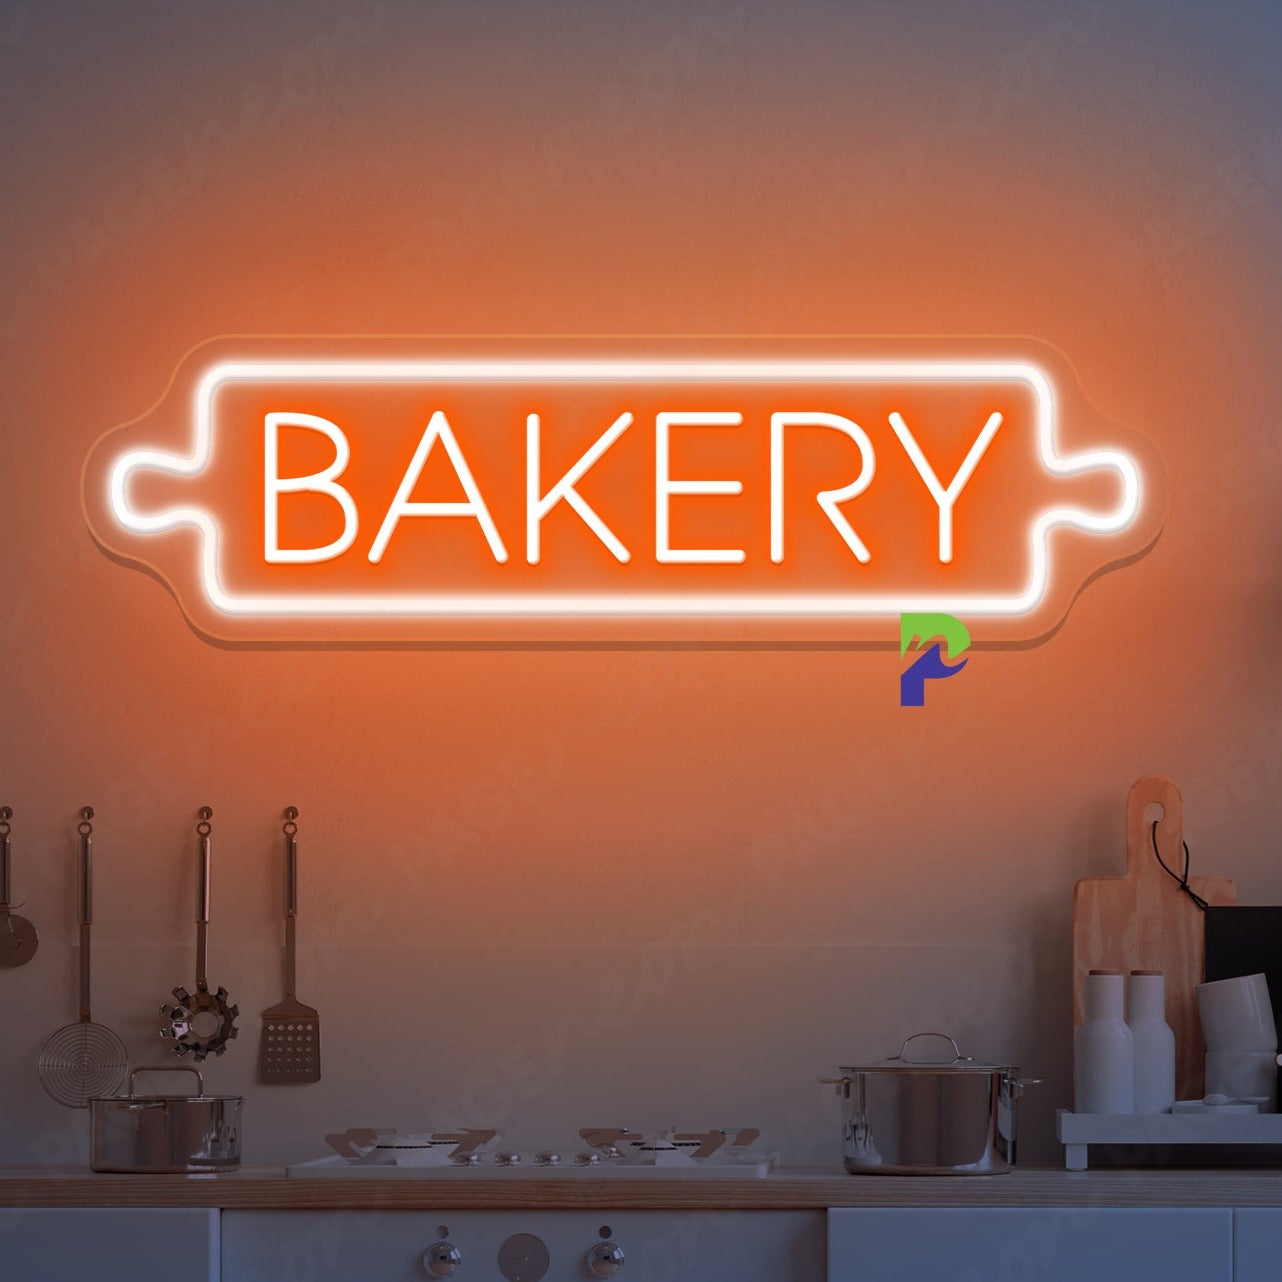 Bakery Neon Sign Led Light For Pantry